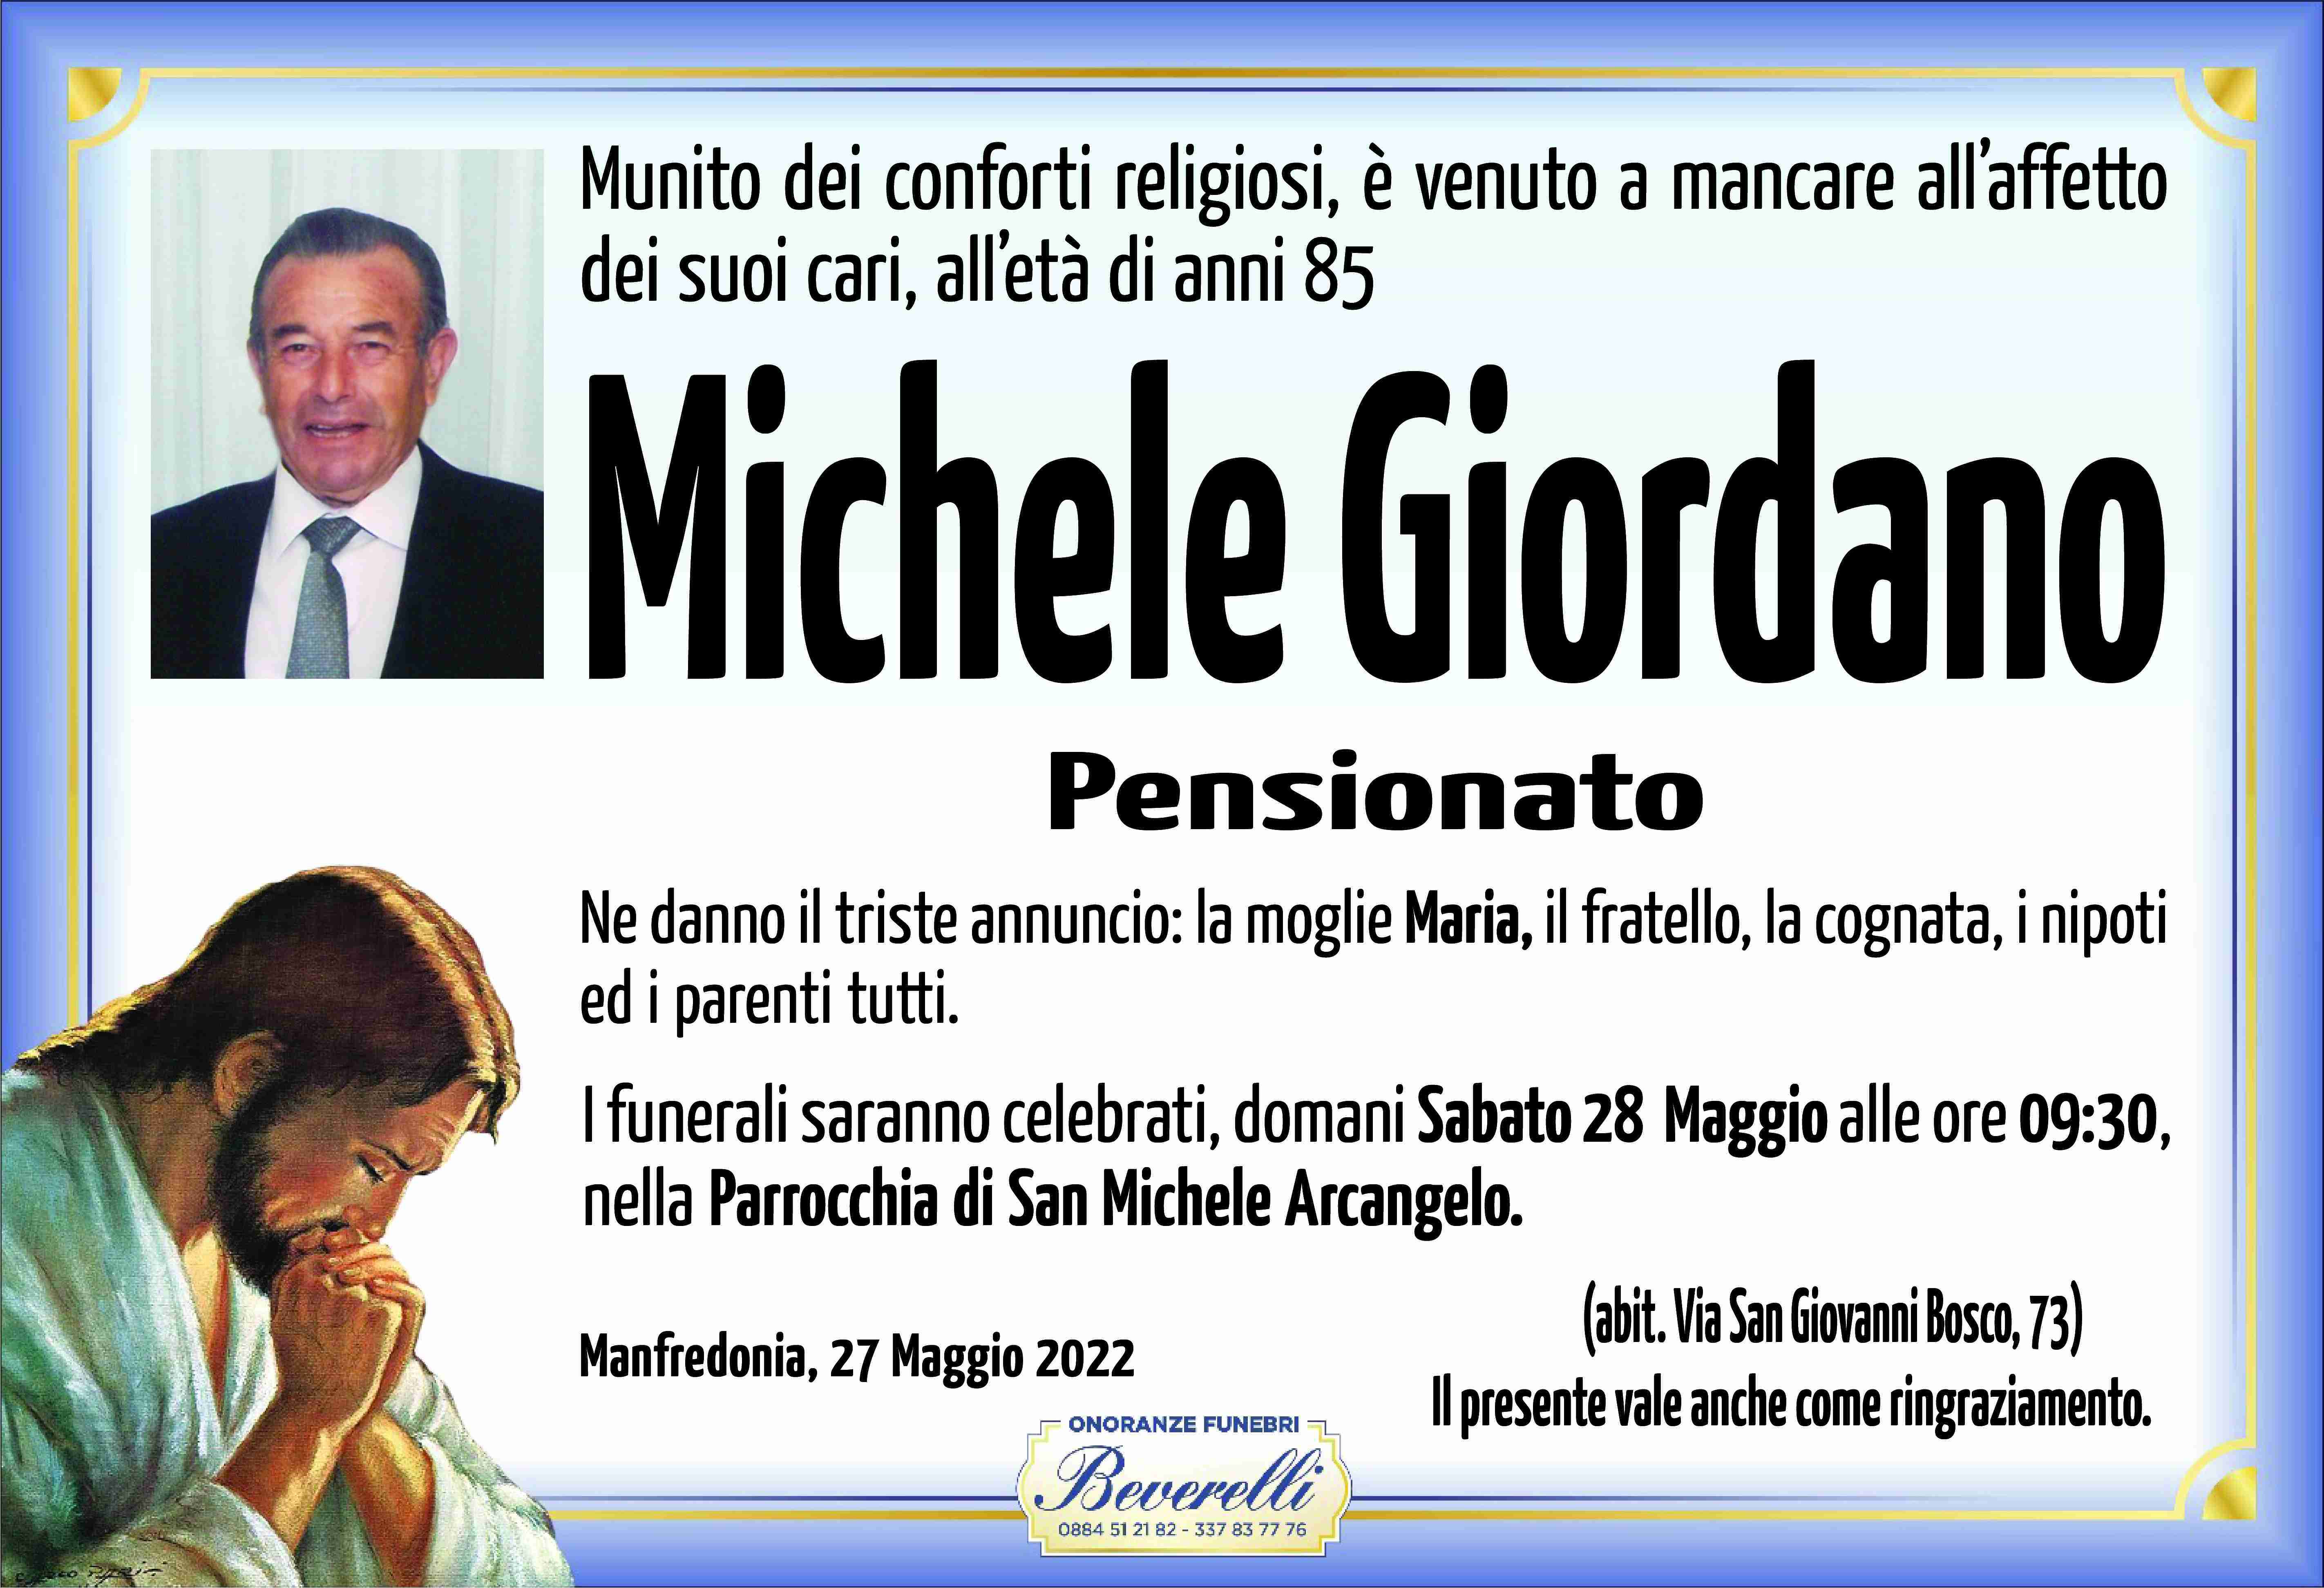 Michele Giordano